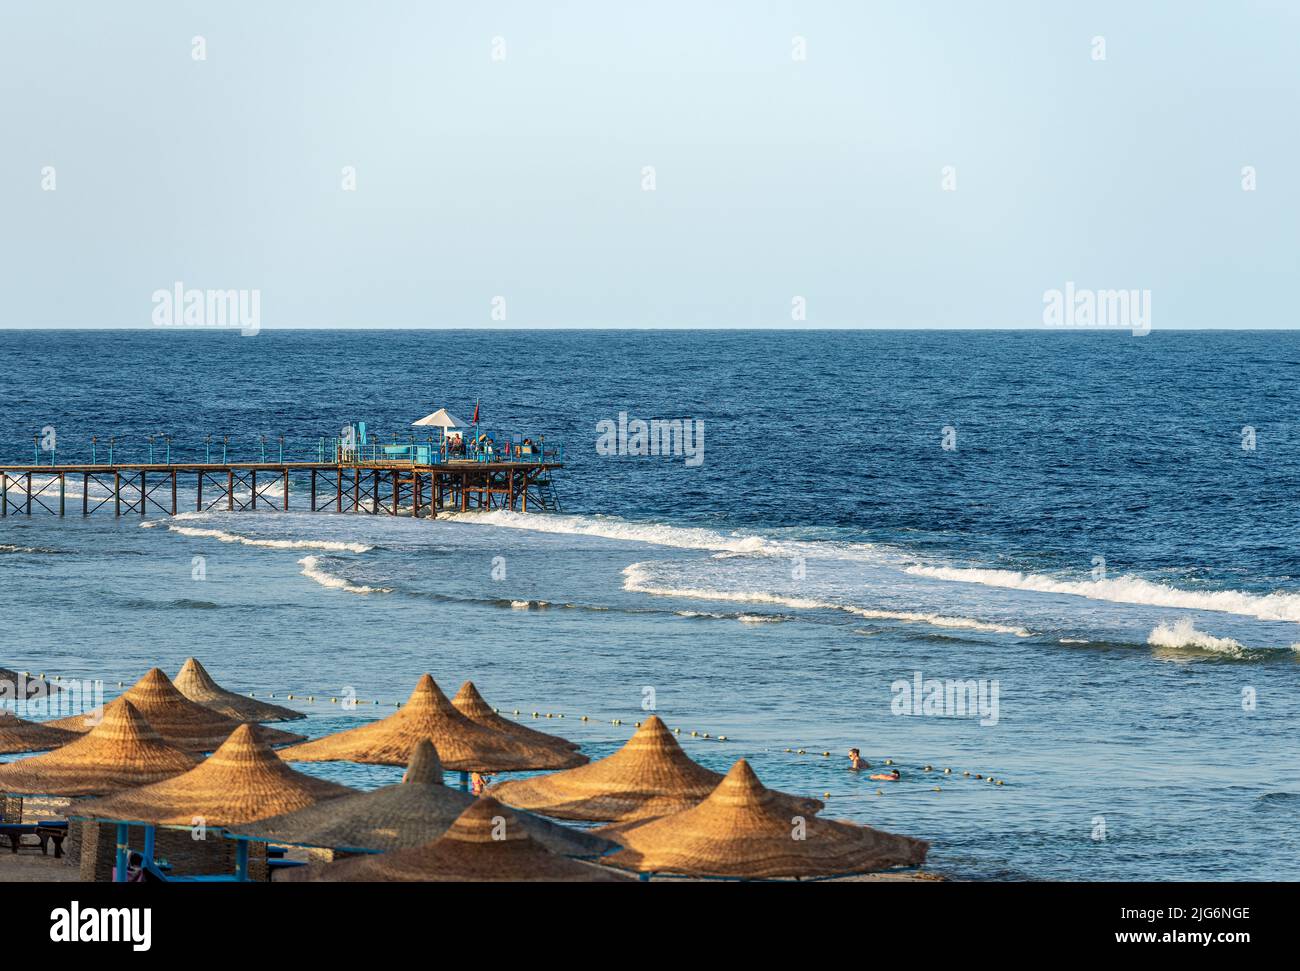 Strandurlaub an der Küste des Roten Meeres in der Nähe von Marsa Alam, Ägypten, Afrika. Hölzerner Pier über dem Korallenriff zum Tauchen, Schnorcheln und Schwimmen. Stockfoto